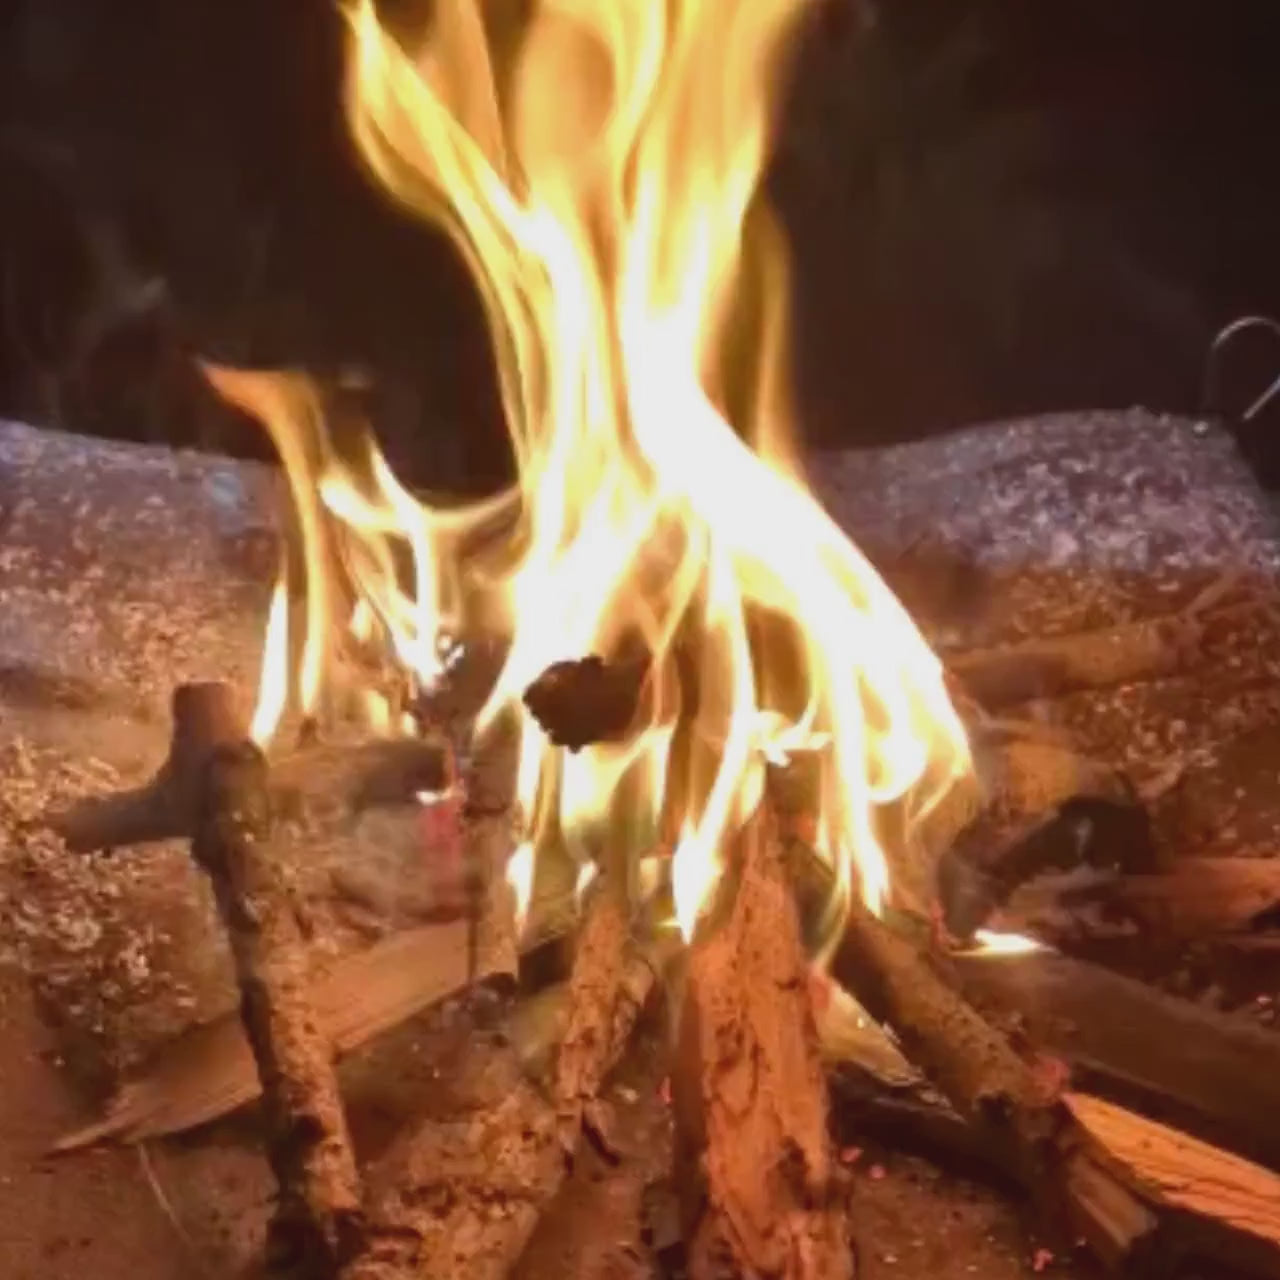 Video laden: Feuernetz Lagerfeuer überall